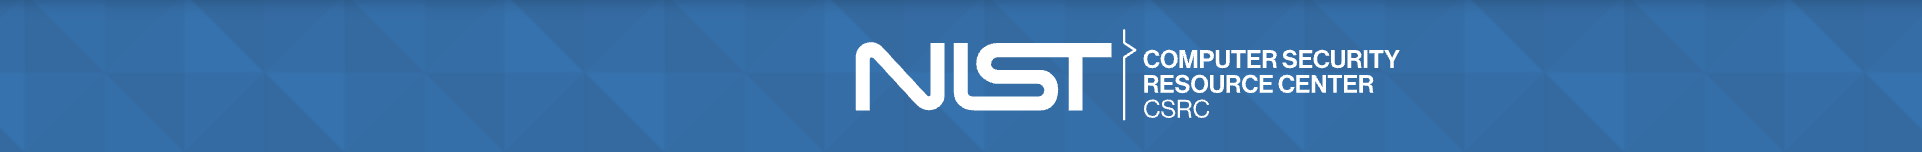 NIST Banner